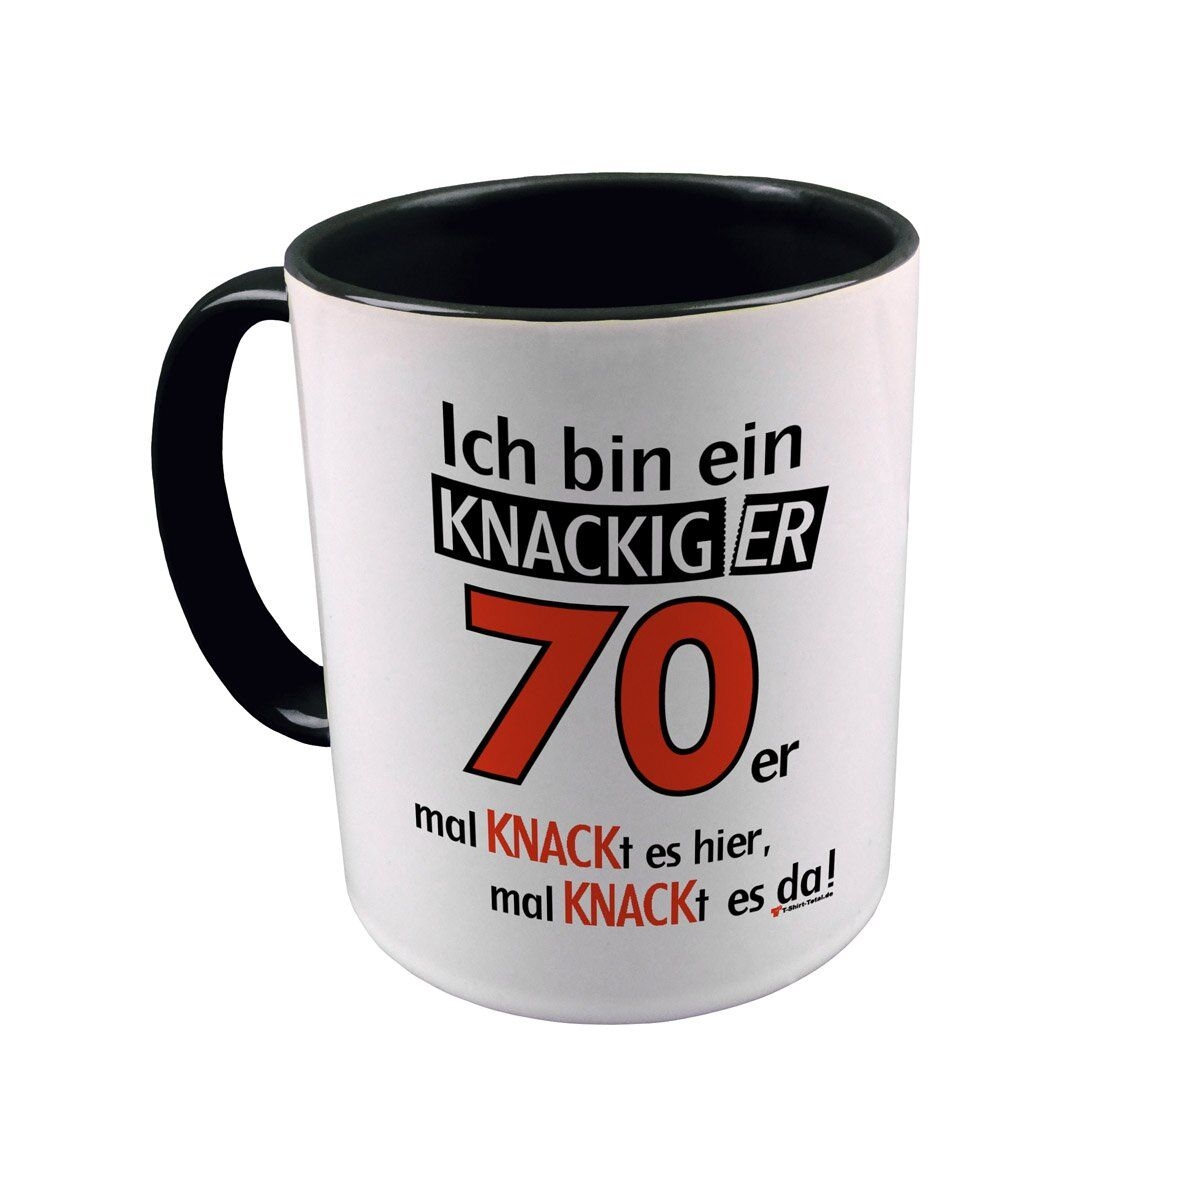 Knackiger 70er Tasse schwarz / weiß